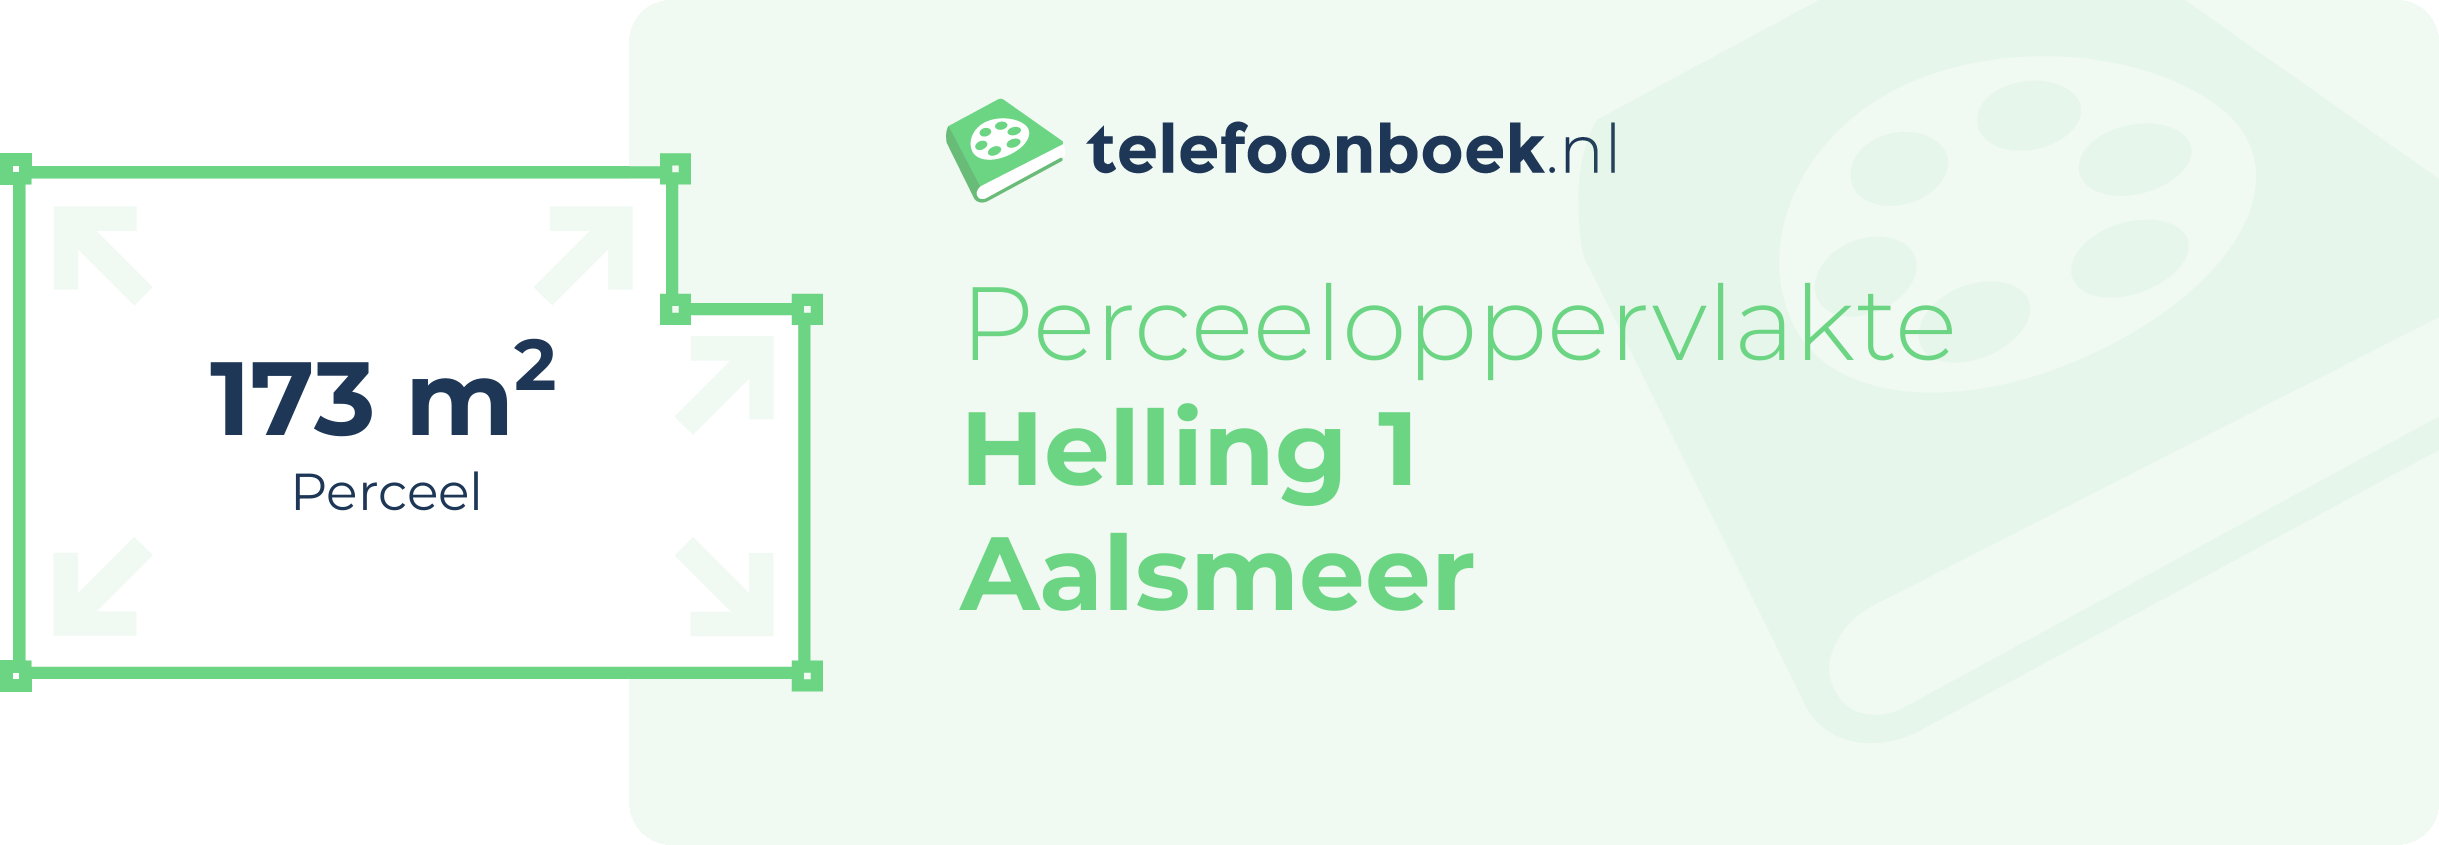 Perceeloppervlakte Helling 1 Aalsmeer